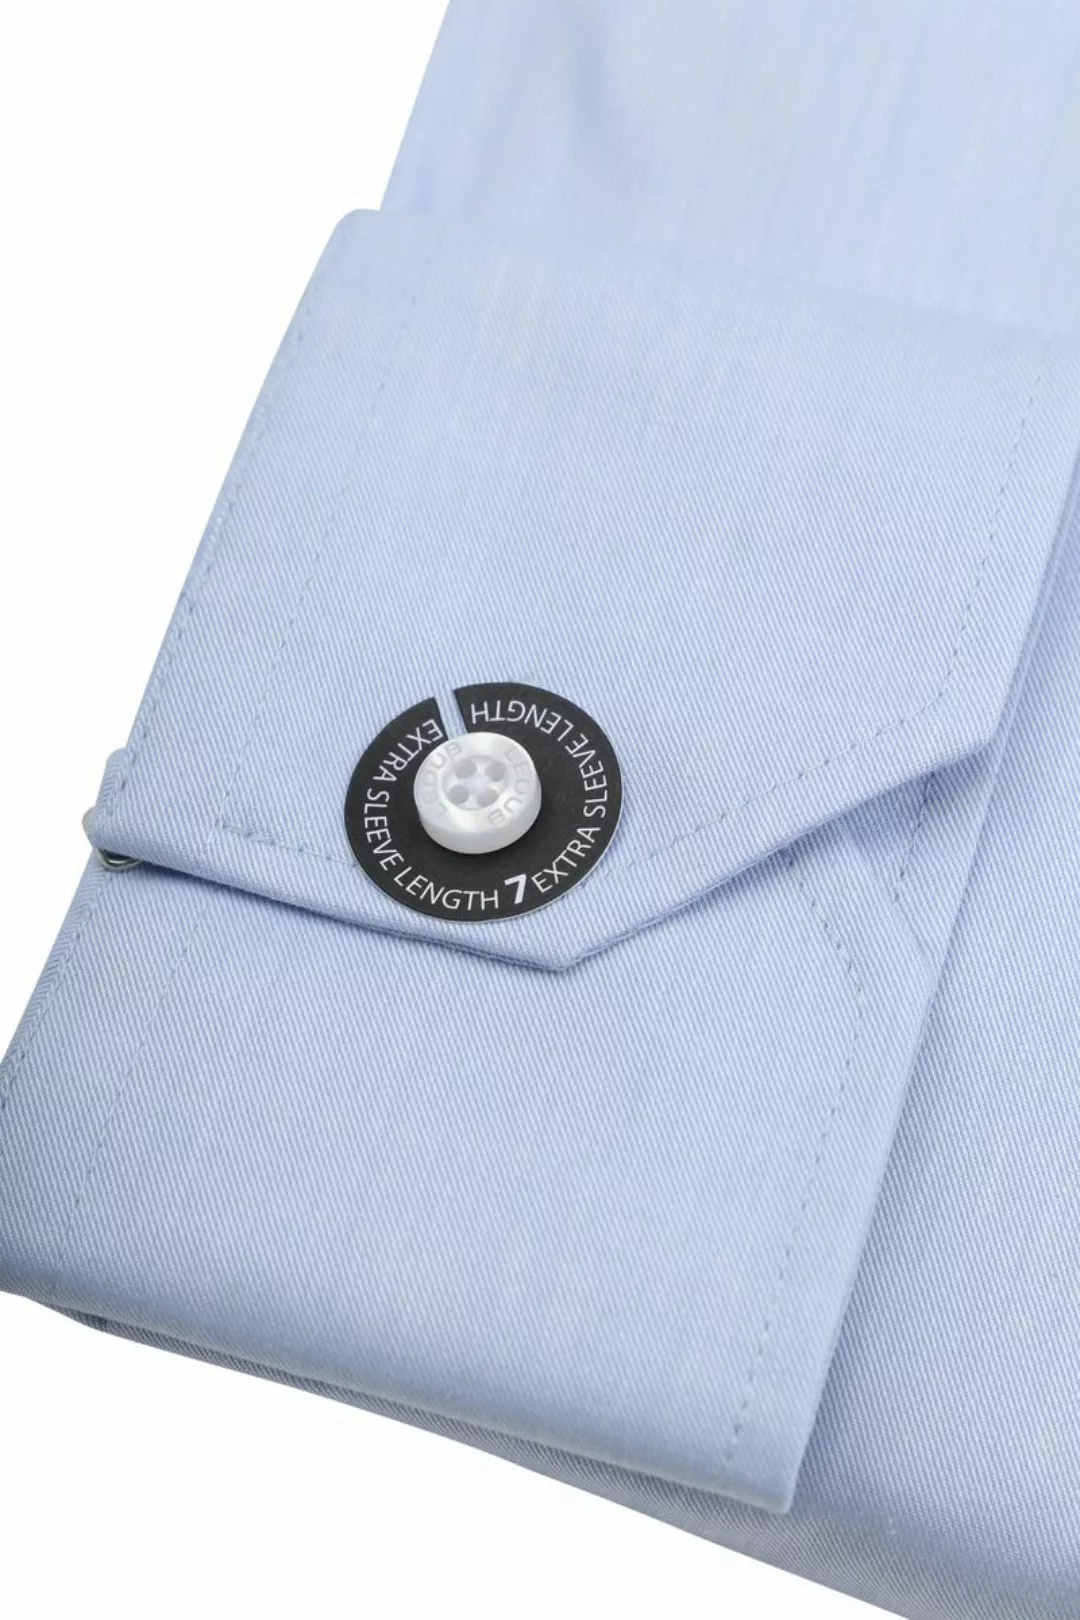 Ledub Hemd Hellblau Brusttassche Extra Long Sleeves - Größe 39 günstig online kaufen